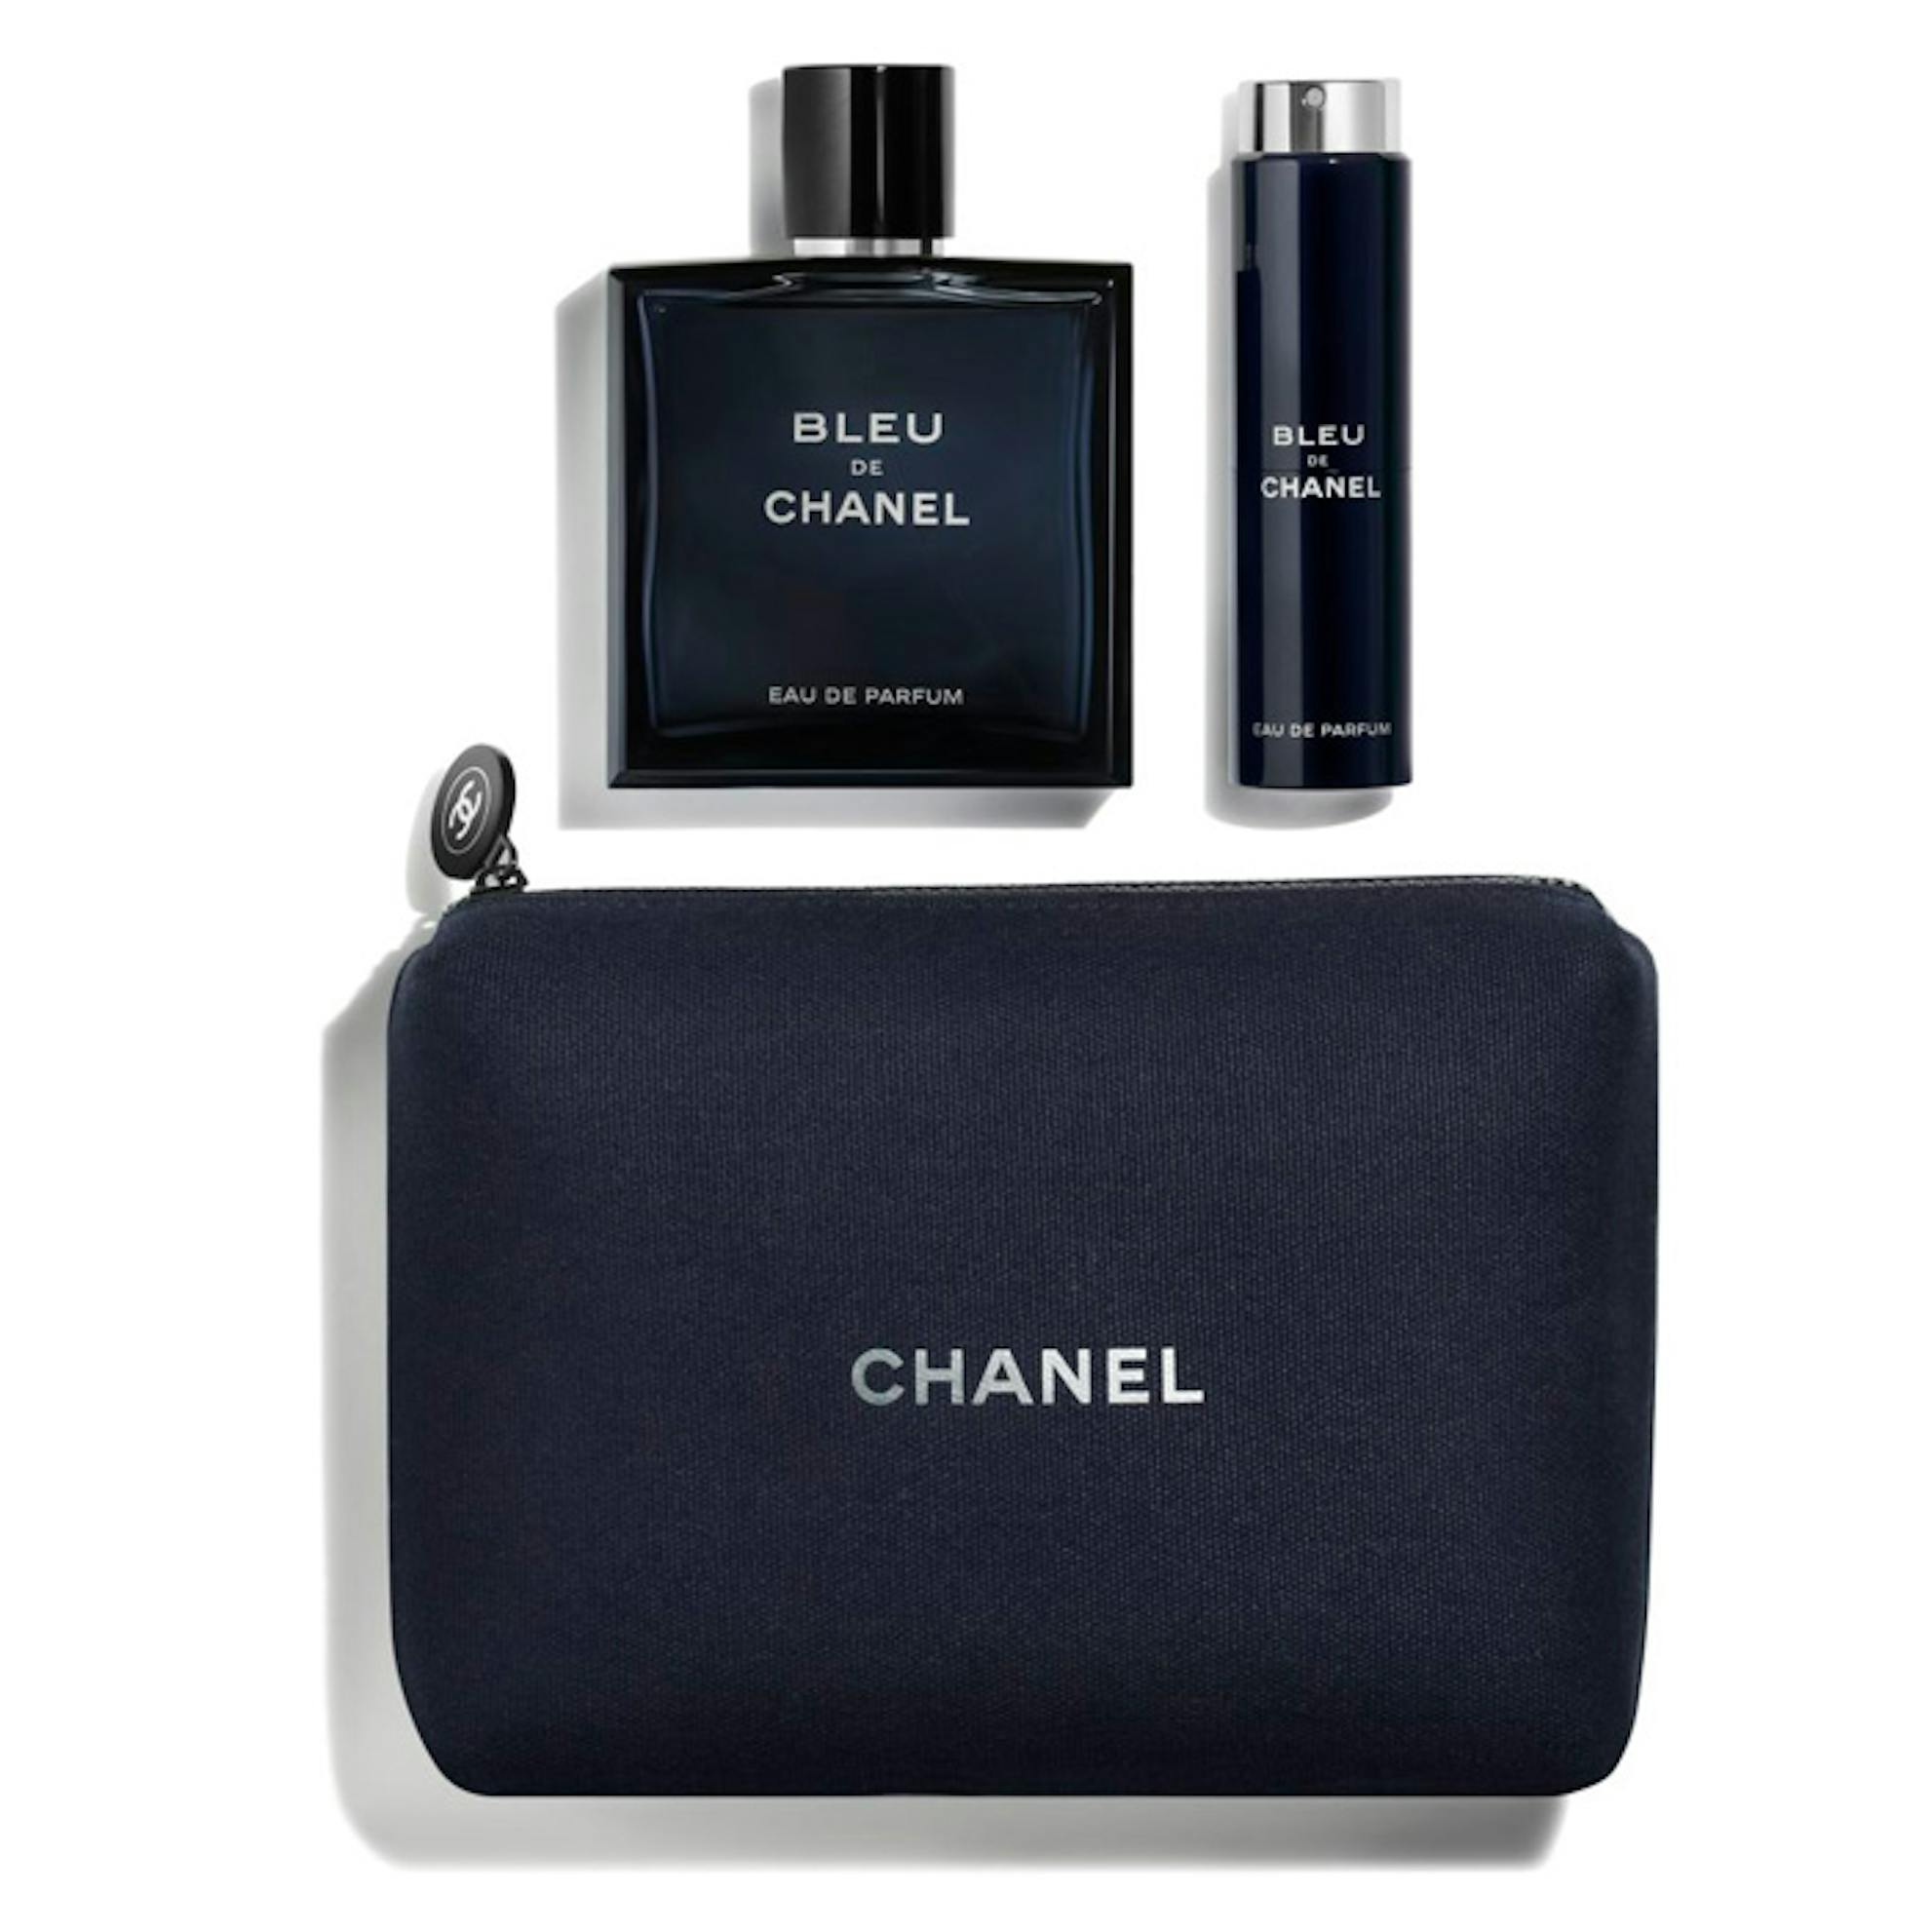 CHANEL Bleau De Chanel 100ml Gift Set, CHANEL Eau De Parfum Gift Set